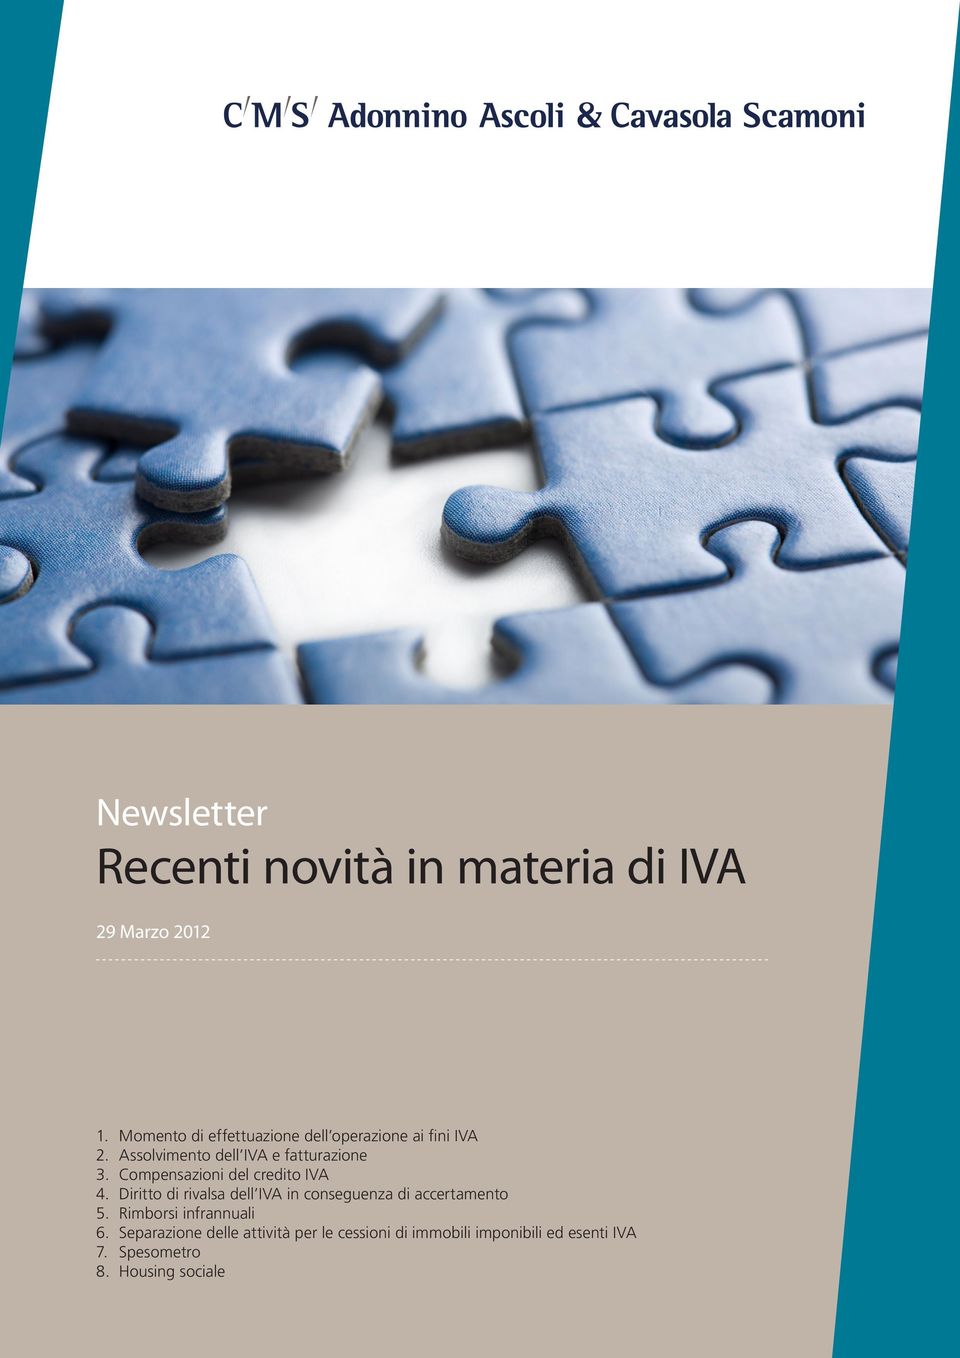 Compensazioni del credito IVA 4. Diritto di rivalsa dell IVA in conseguenza di accertamento 5.